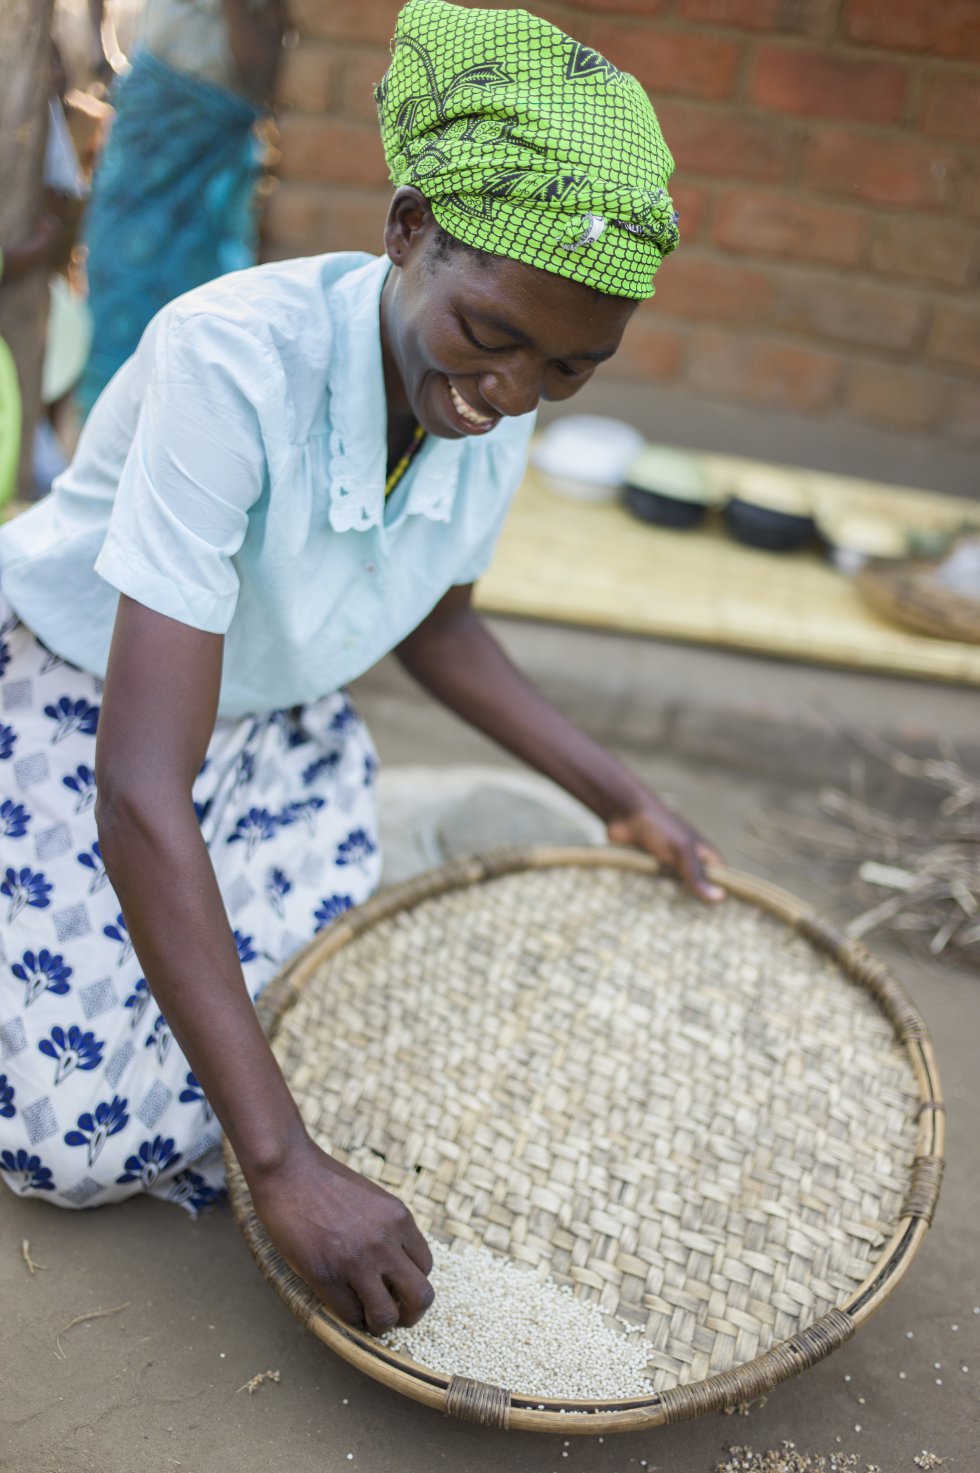 'Nsima', una práctica culinaria tradicional de Malawi, también ha sido reconocida en 2017 Patrimonio Cultural Inmaterial de la Humanidad. 'Nsima' hace referencia tanto a una masa espesa hecha a partir de harina de maíz, como a los platillos que se preparan con ella. Compartir la masa de maíz y los otros platillos es una costumbre arraigada en las familias malawis y en gran parte de África.